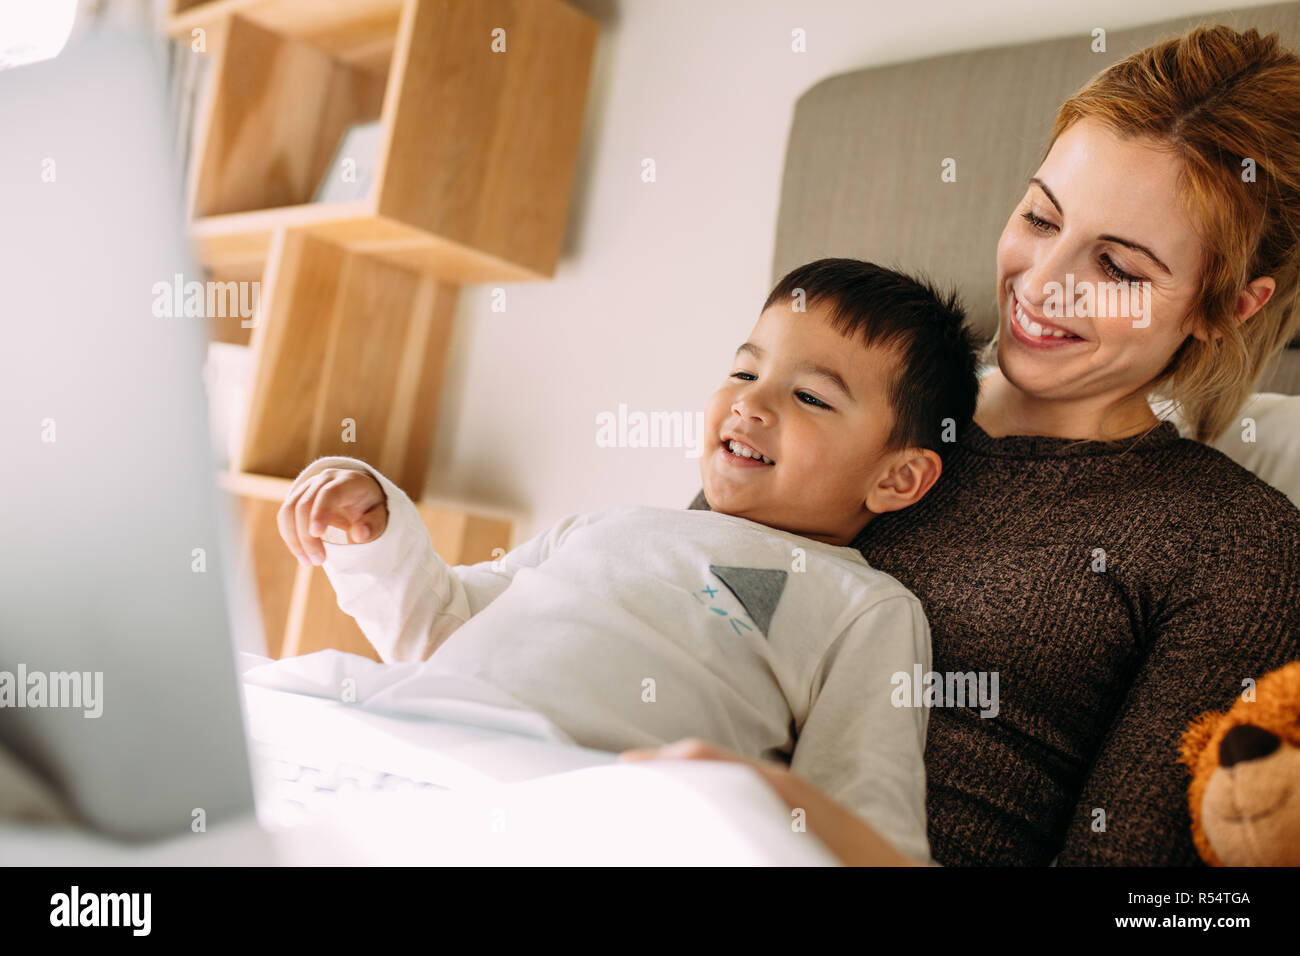 Lächelnde junge Frau mit einem kleinen Jungen auf dem Bett Filme auf dem Laptop. Süße Junge mit der Mutter am Laptop. Stockfoto